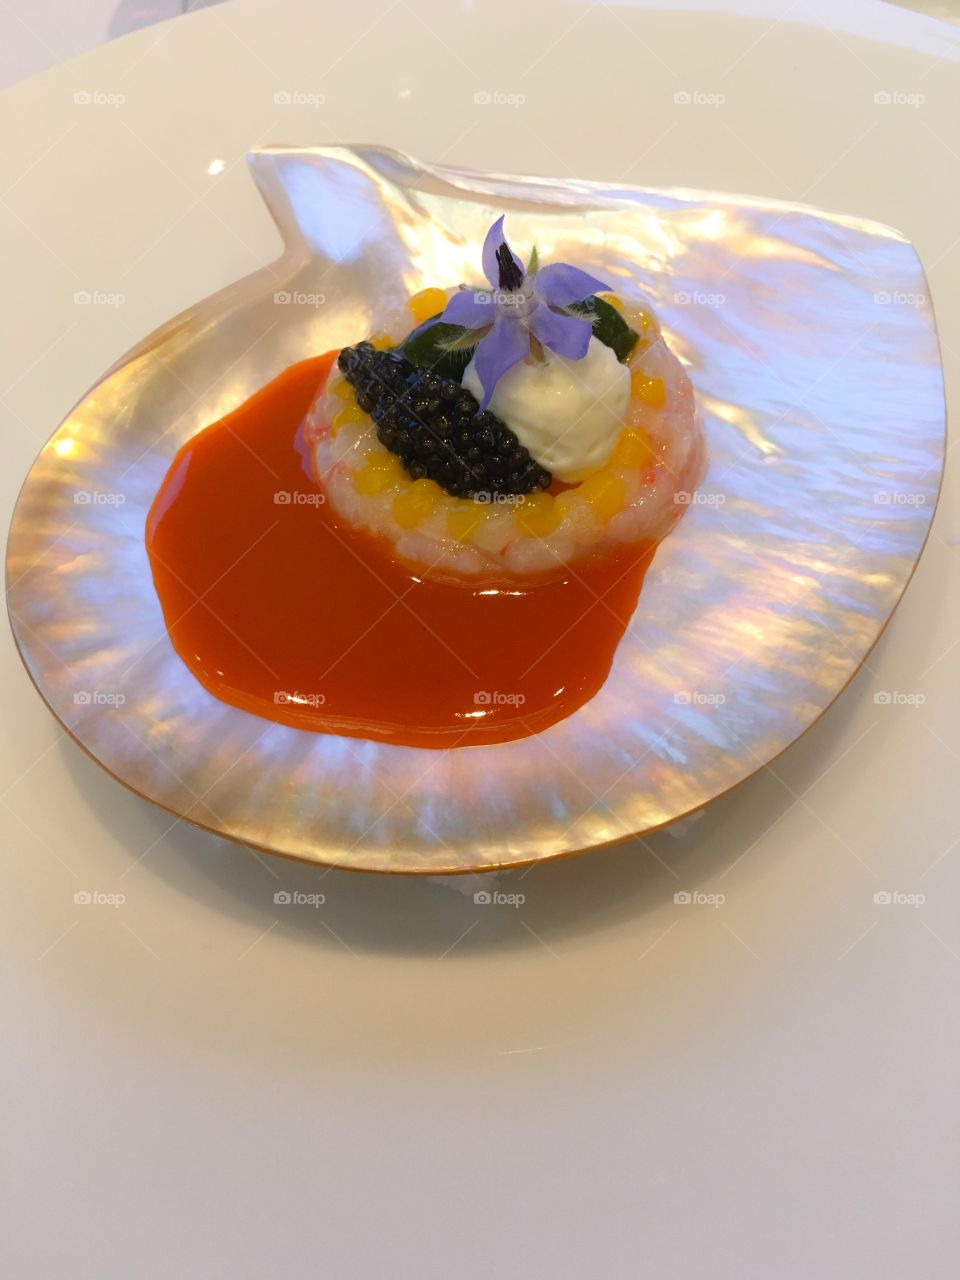 Shrimp tartar and caviar